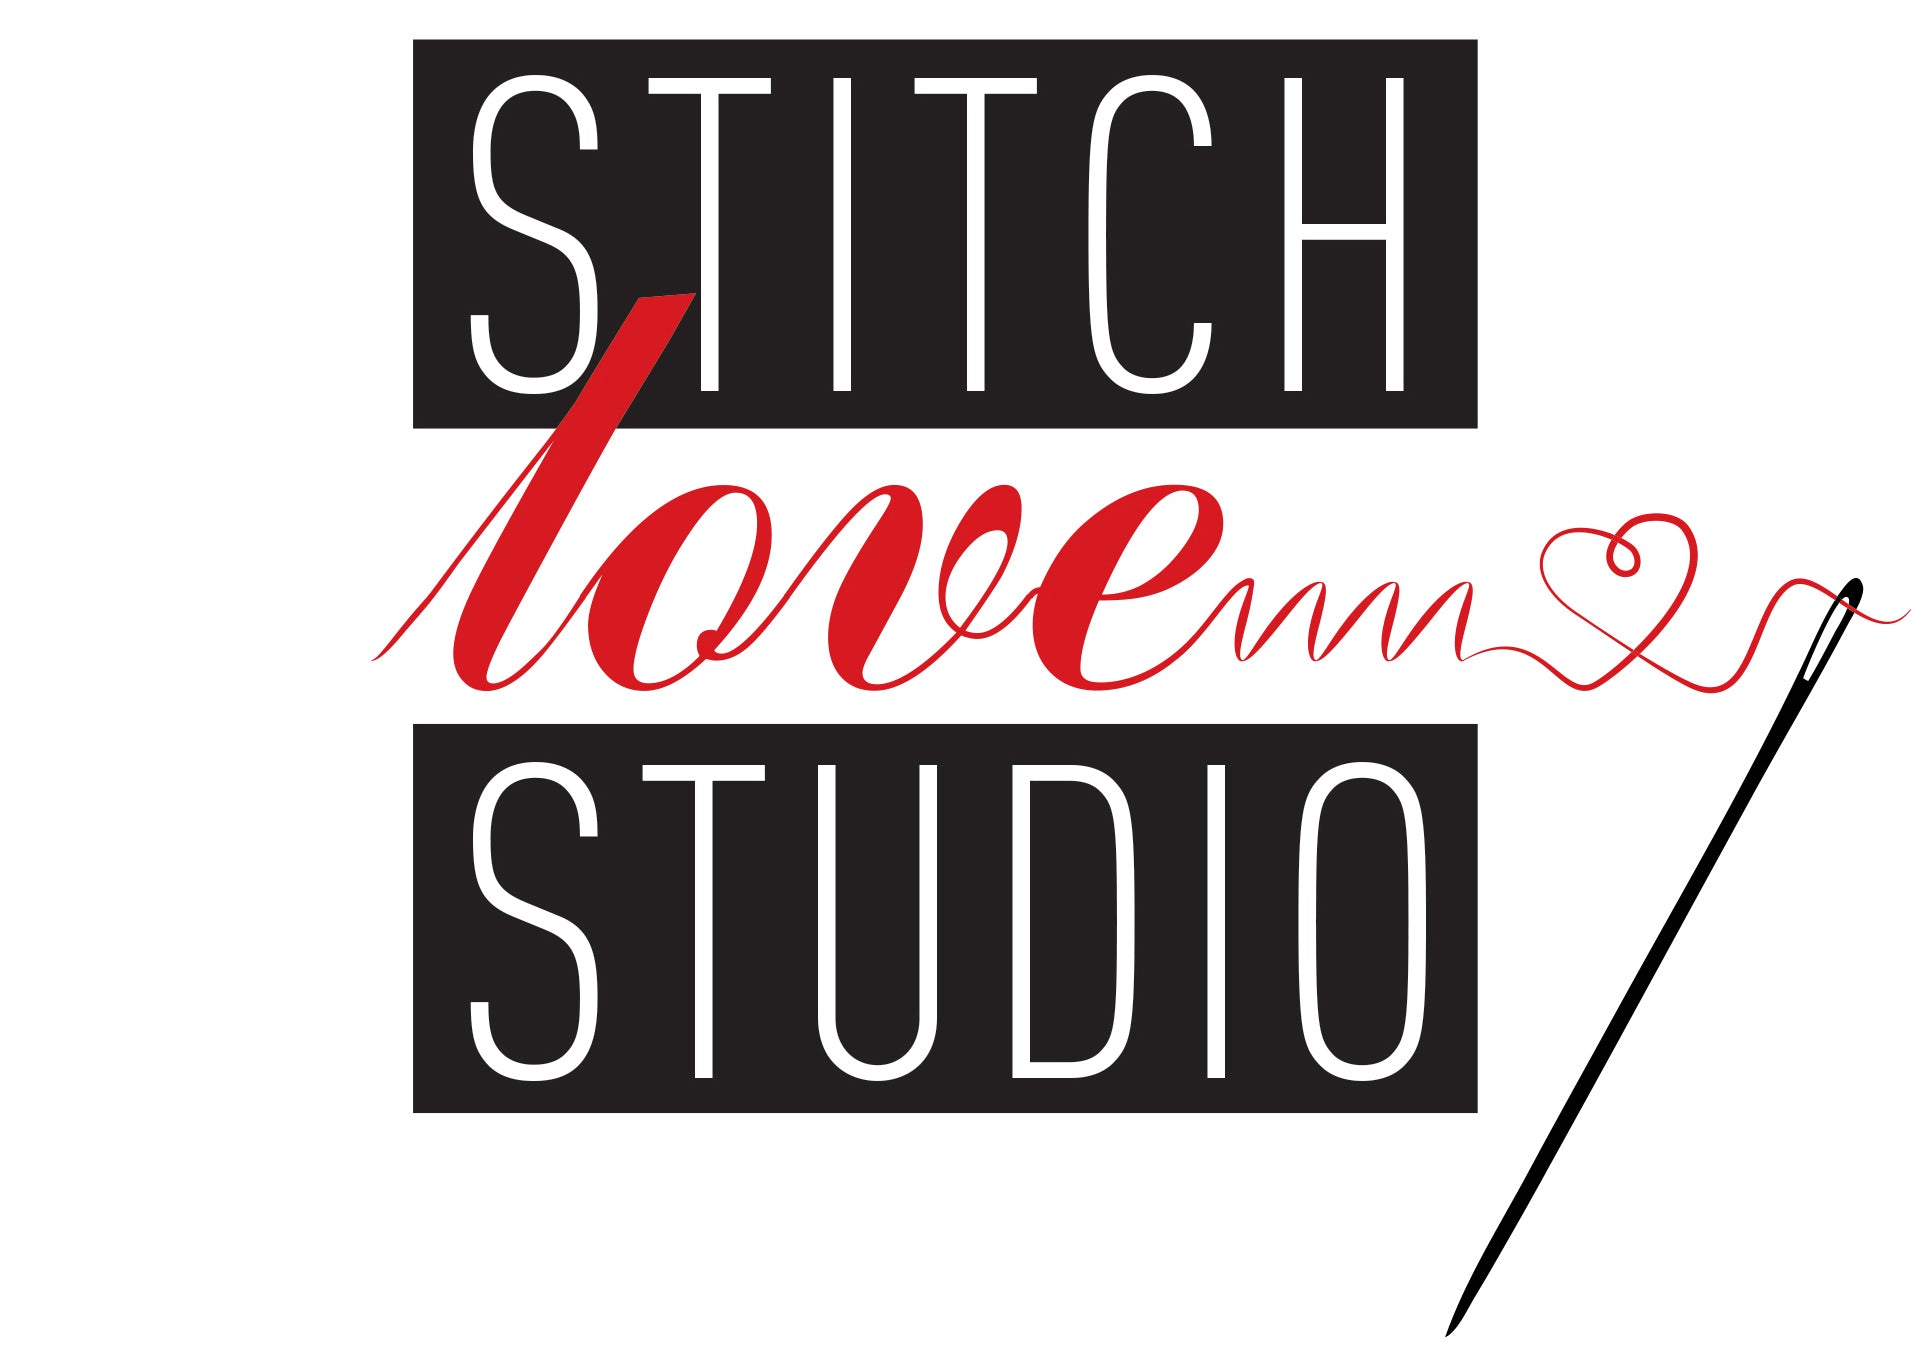 Magnetic Seam Guide in 2 Sizes – Stitch Love Studio